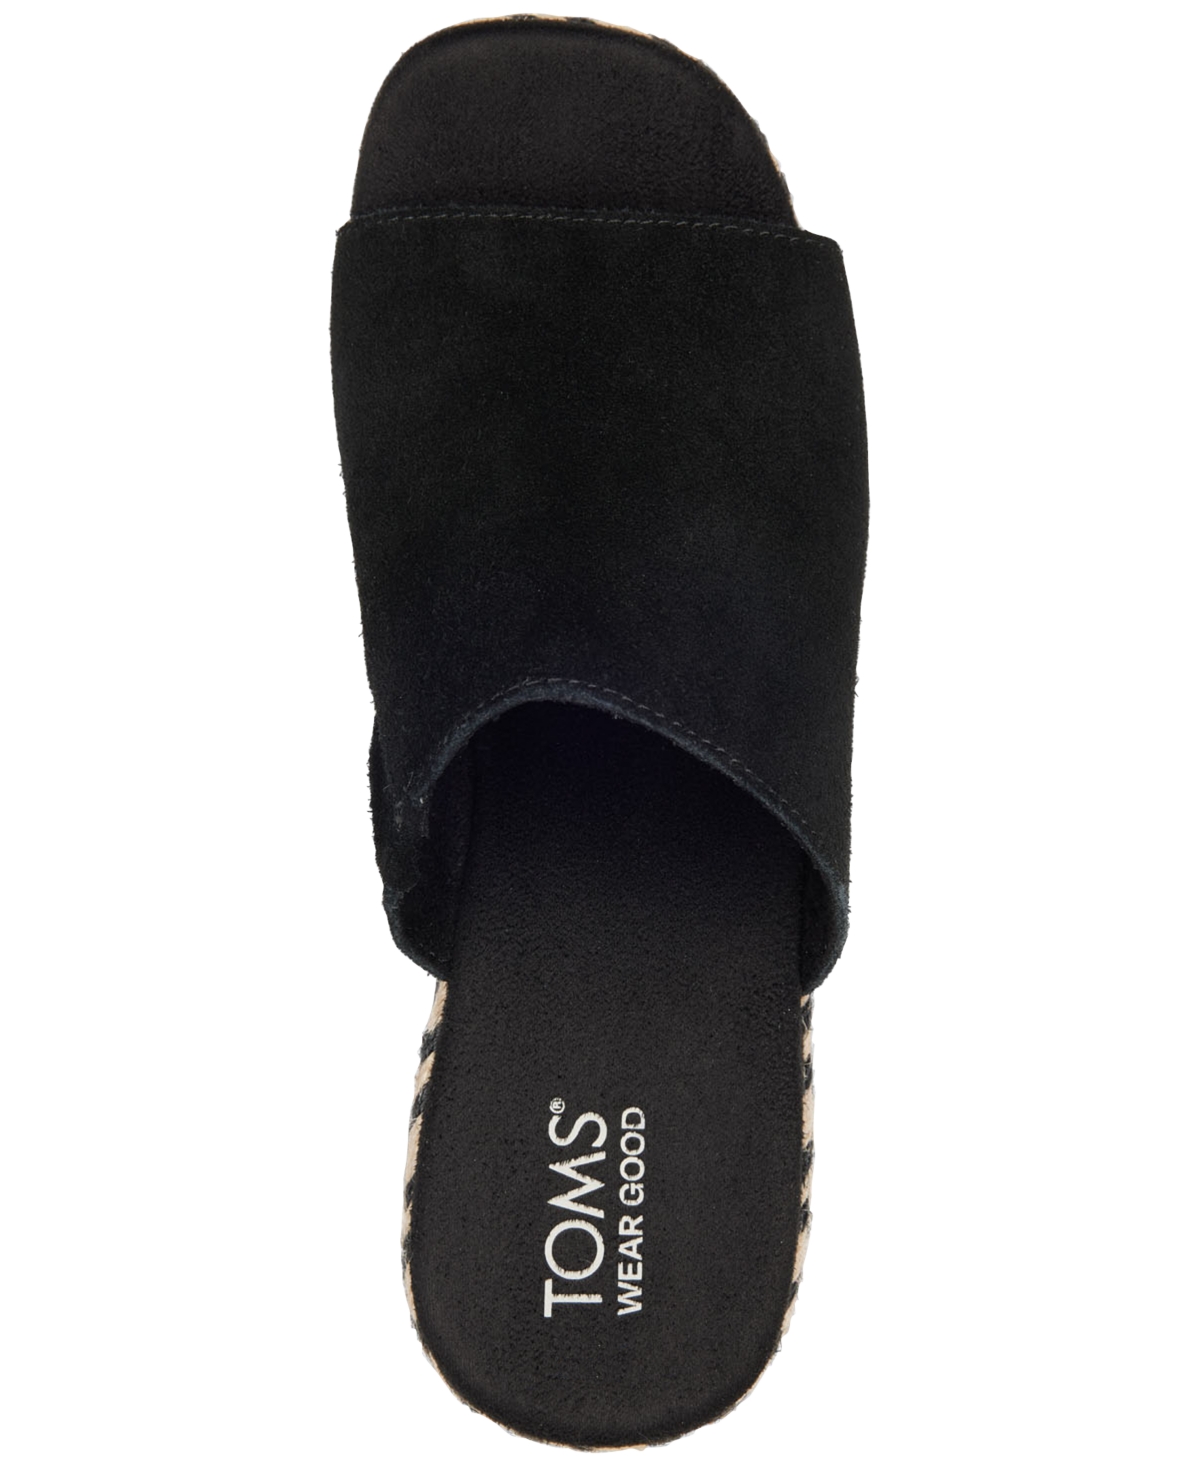 Shop Toms Women's Laila Slide Platform Espadrille Sandals In Black Suede